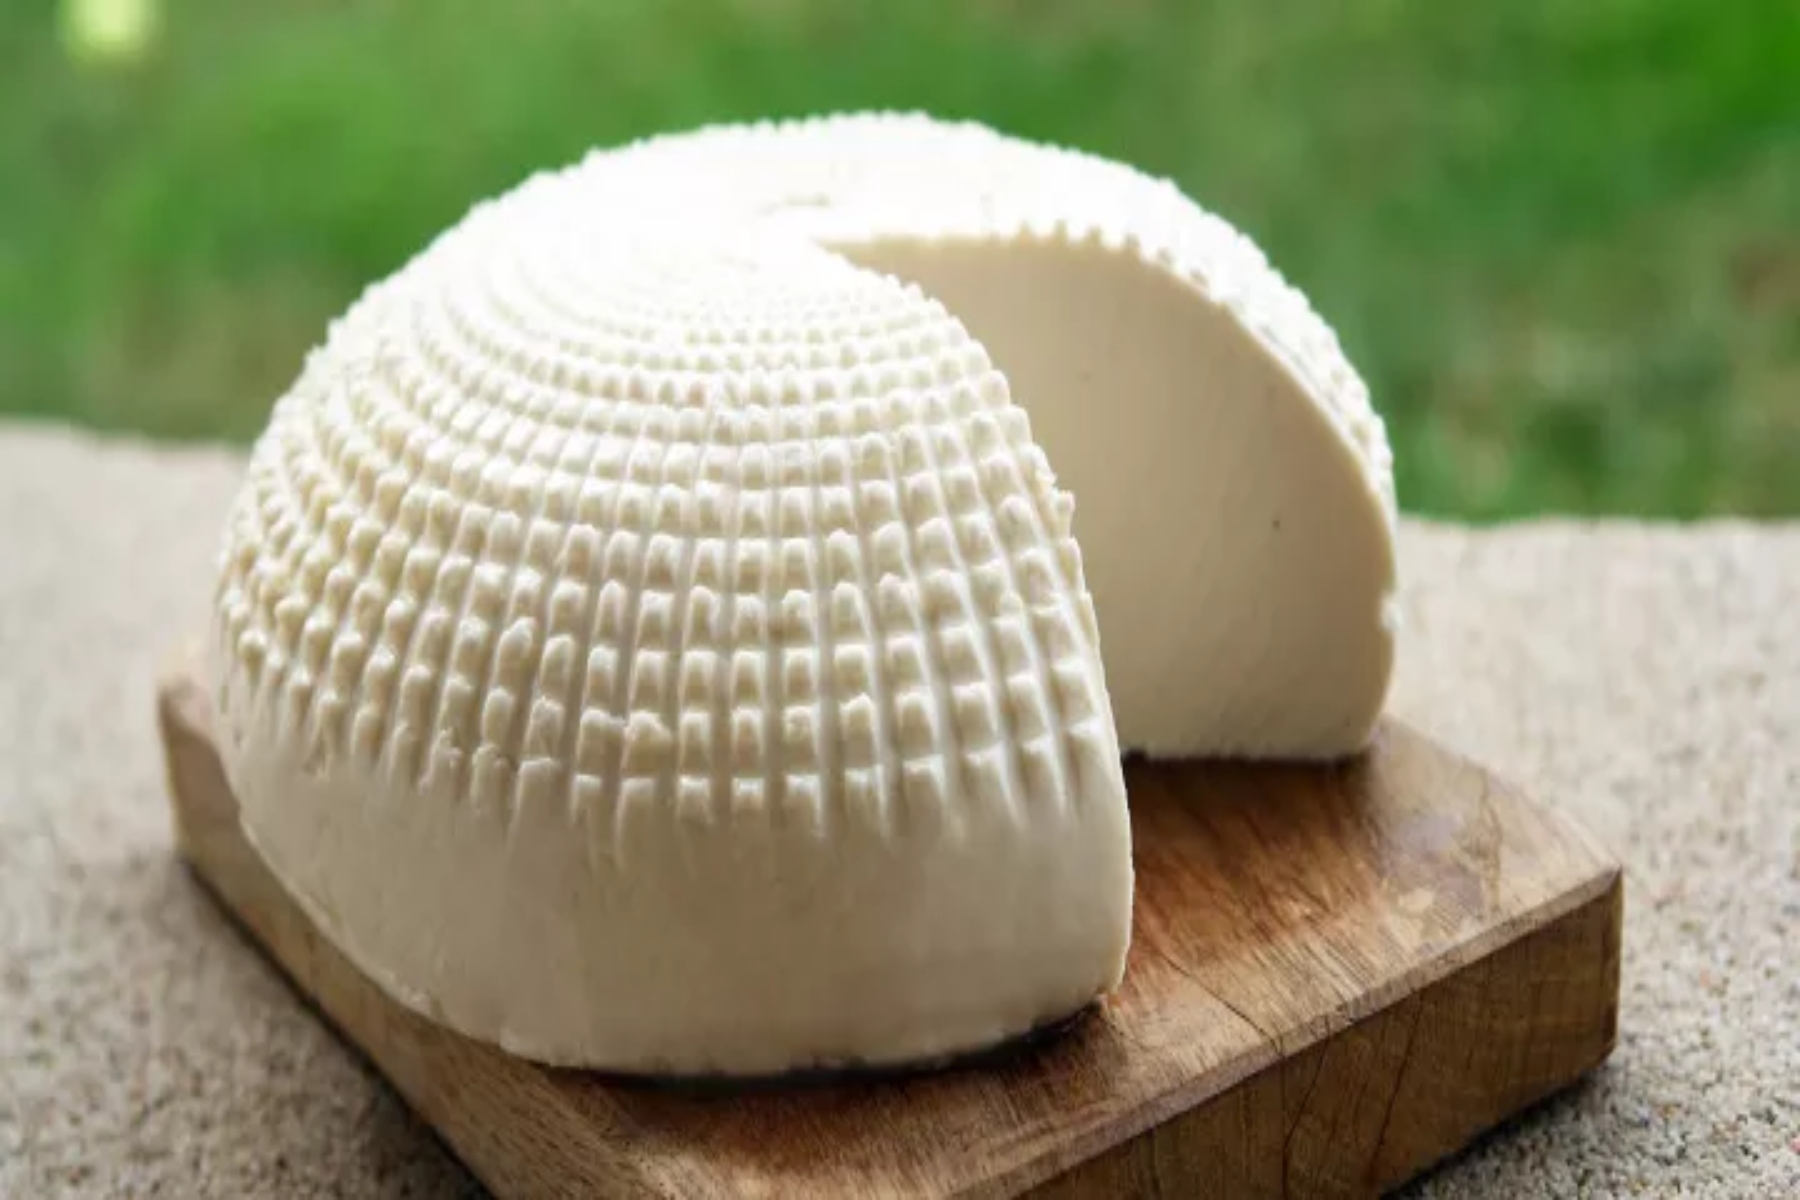 Κατσικίσιο τυρί: Ποια τα οφέλη και οι παρενέργειες από την κατανάλωση κατσικίσιου τυριού;